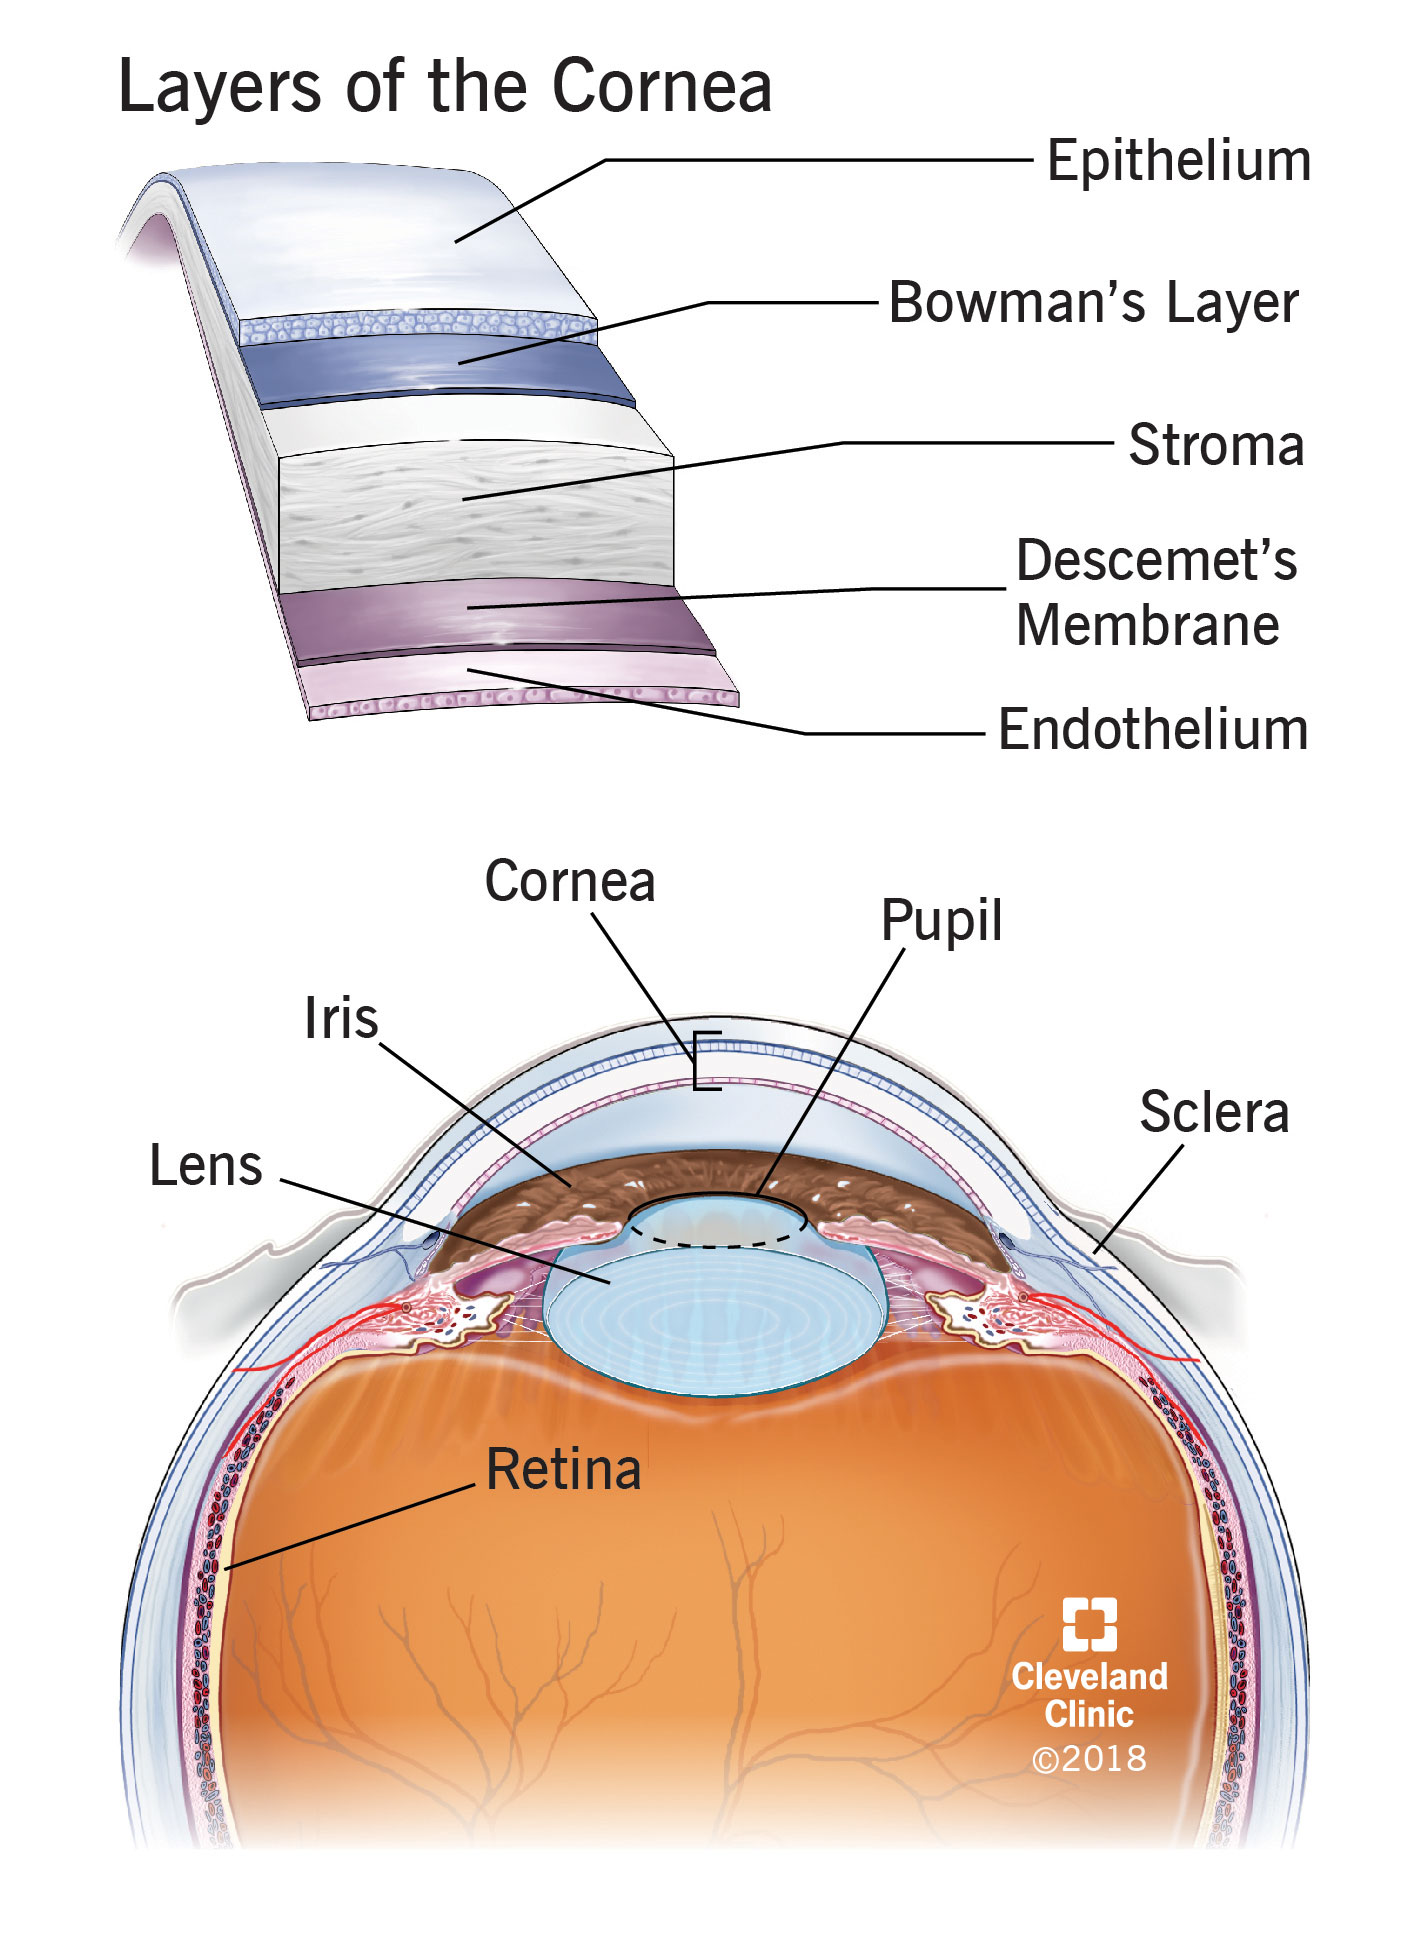 Anatomia dell'occhio e strati della cornea.